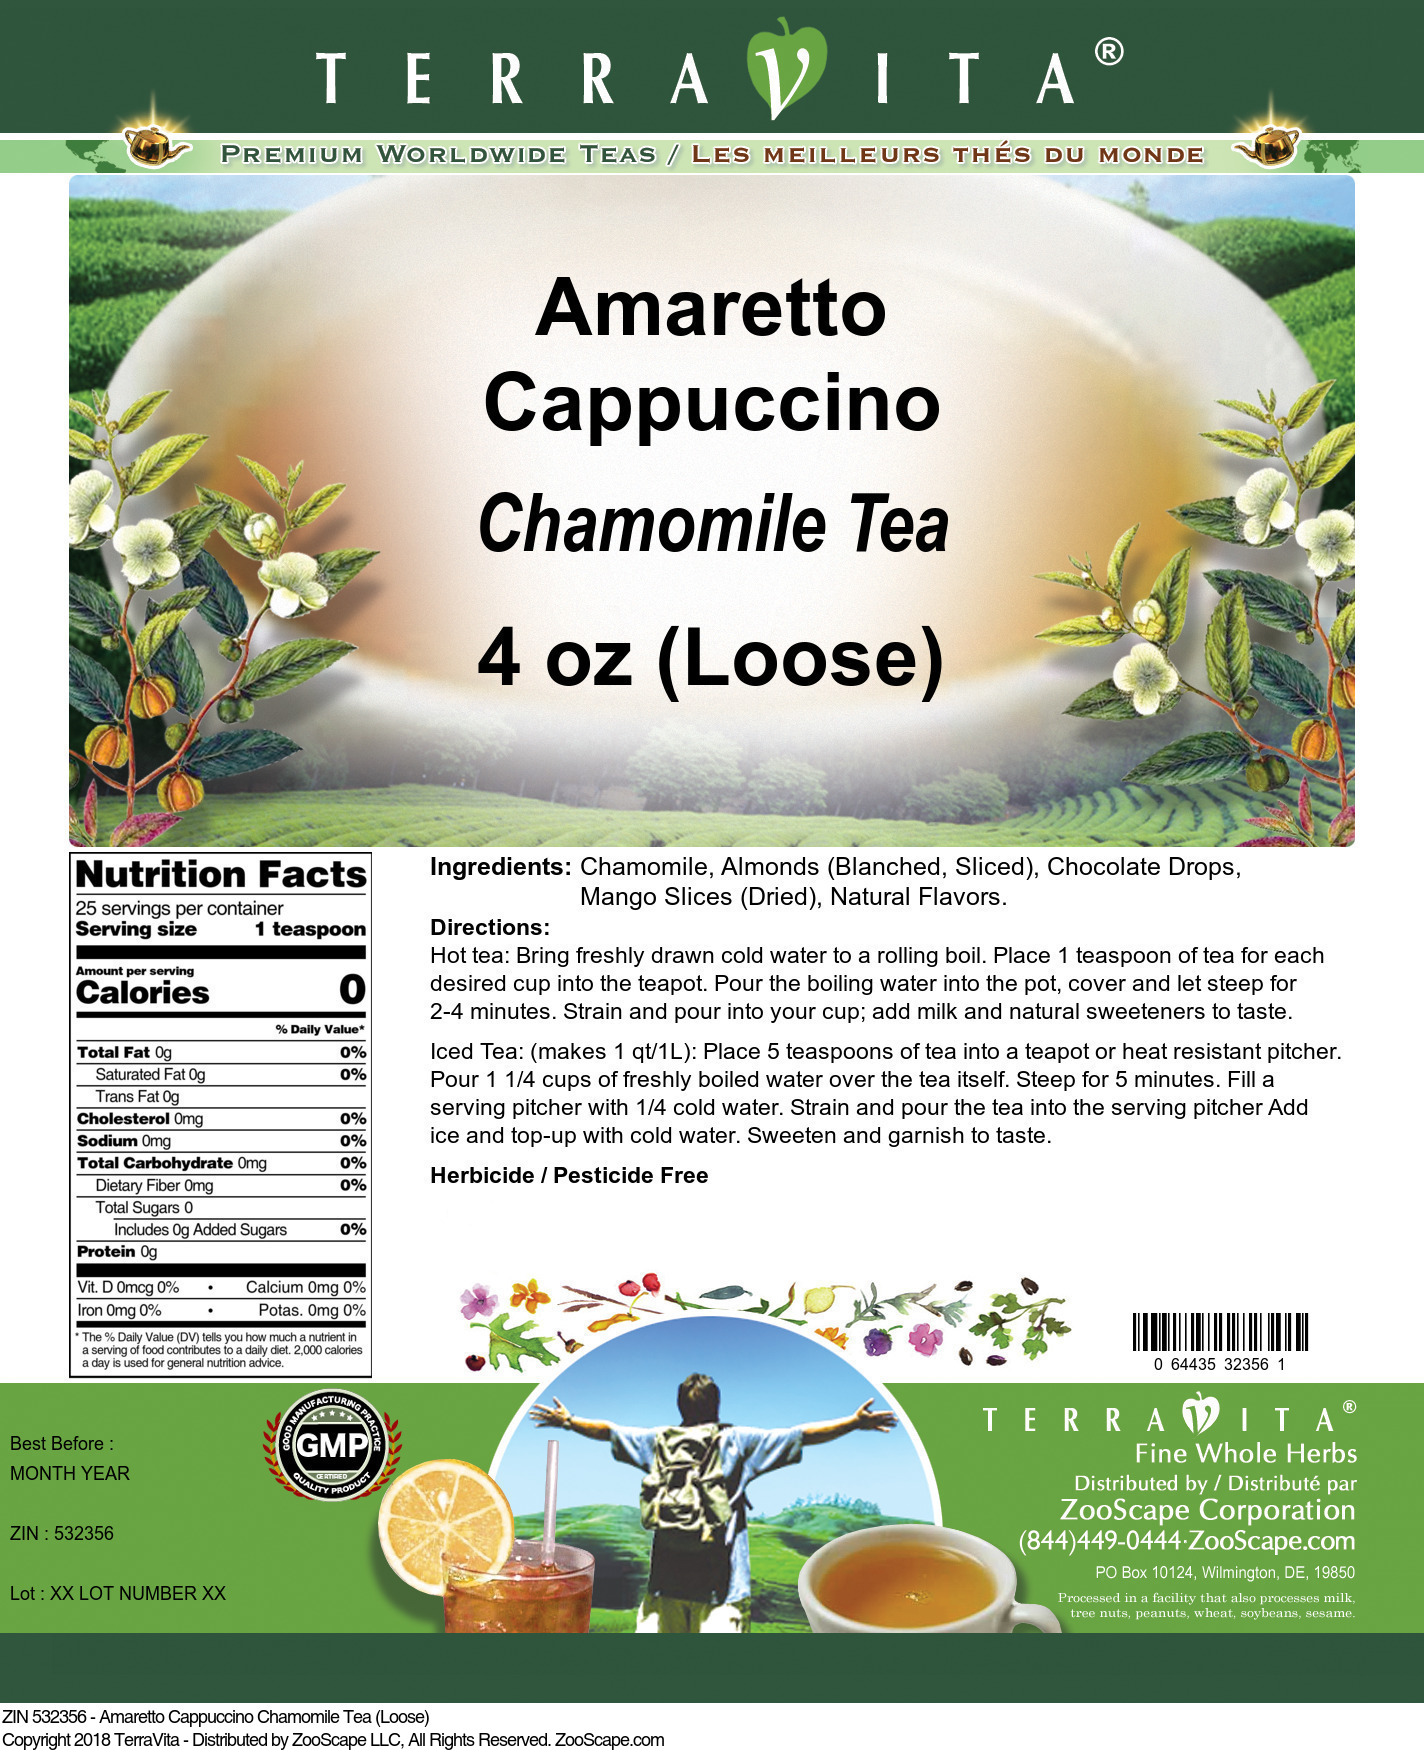 Amaretto Cappuccino Chamomile Tea (Loose) - Label